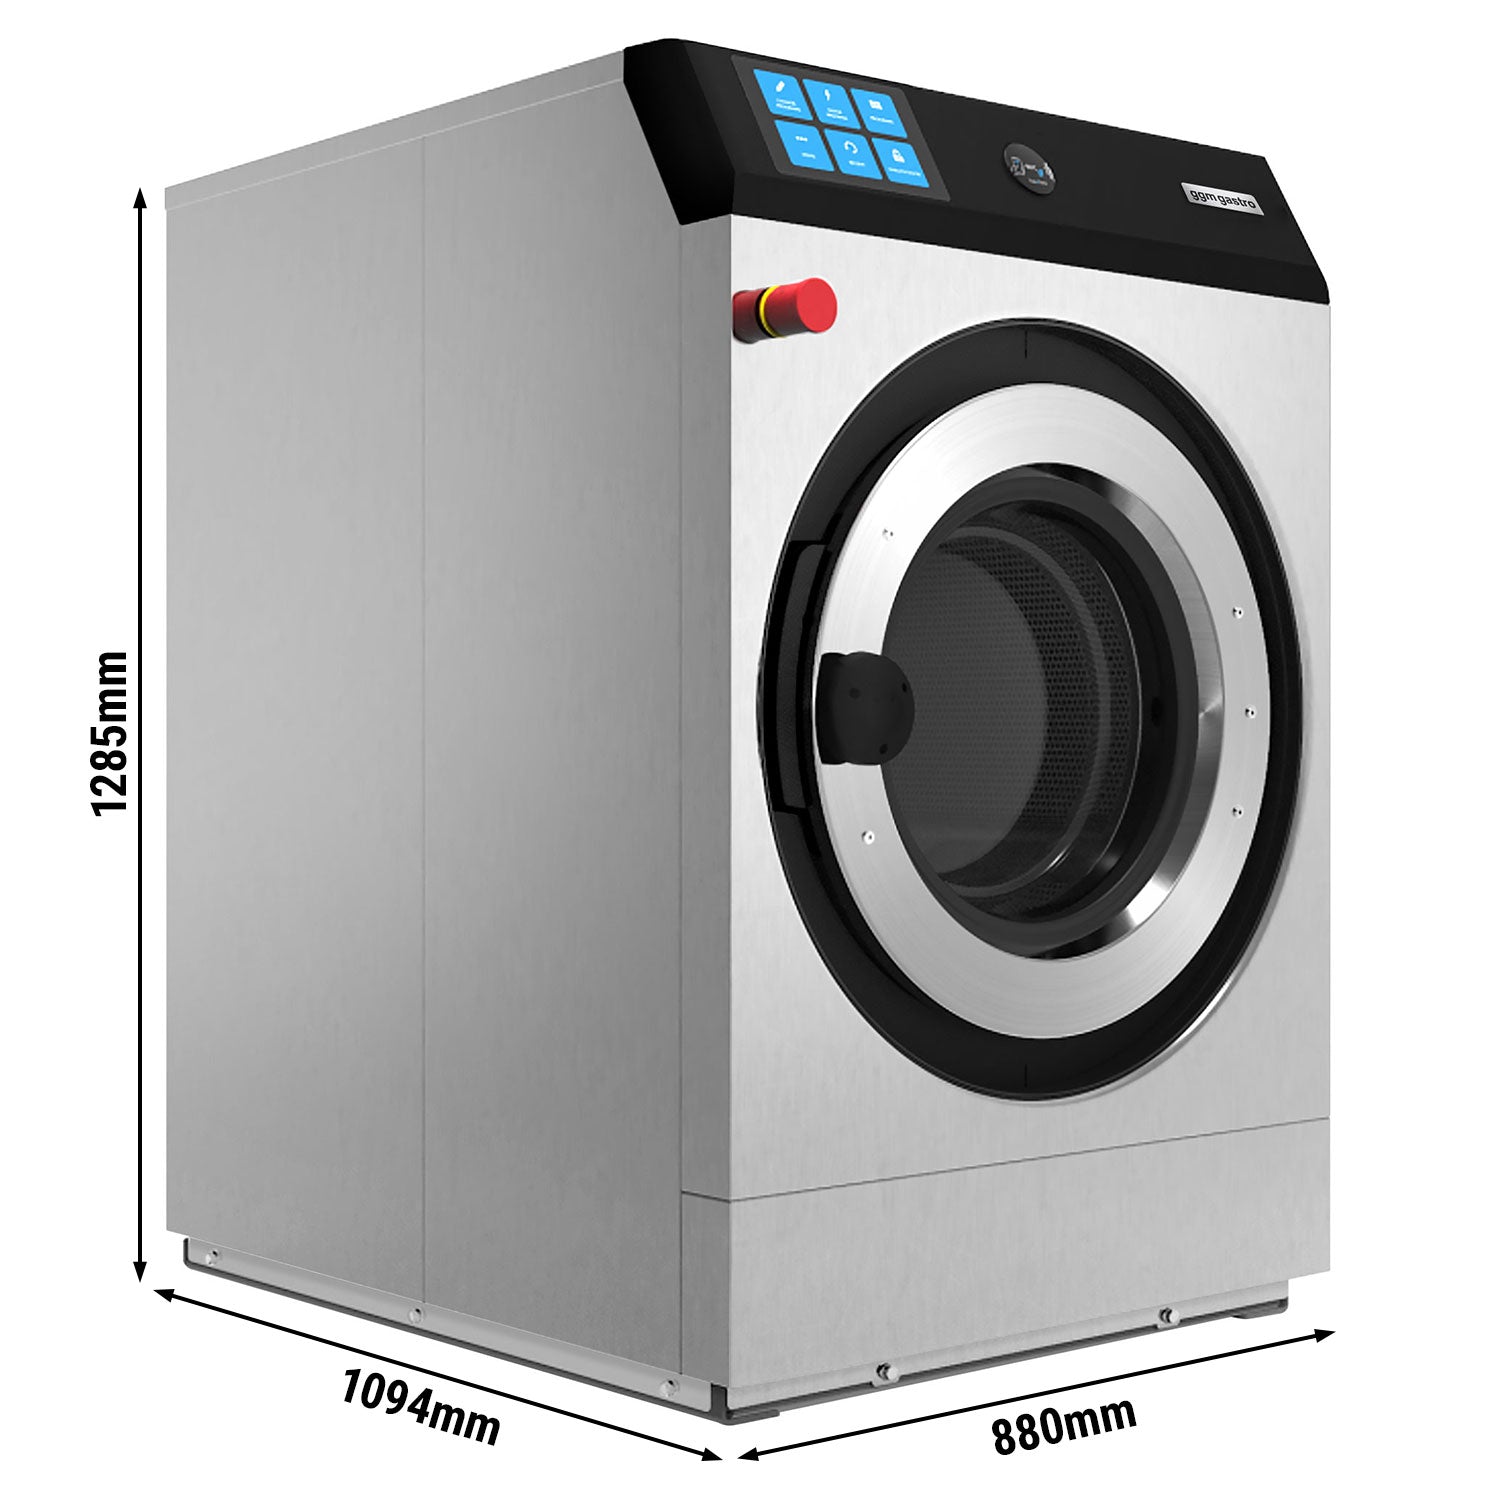 Elektrisk vaskemaskin 23 kg / 900 turer